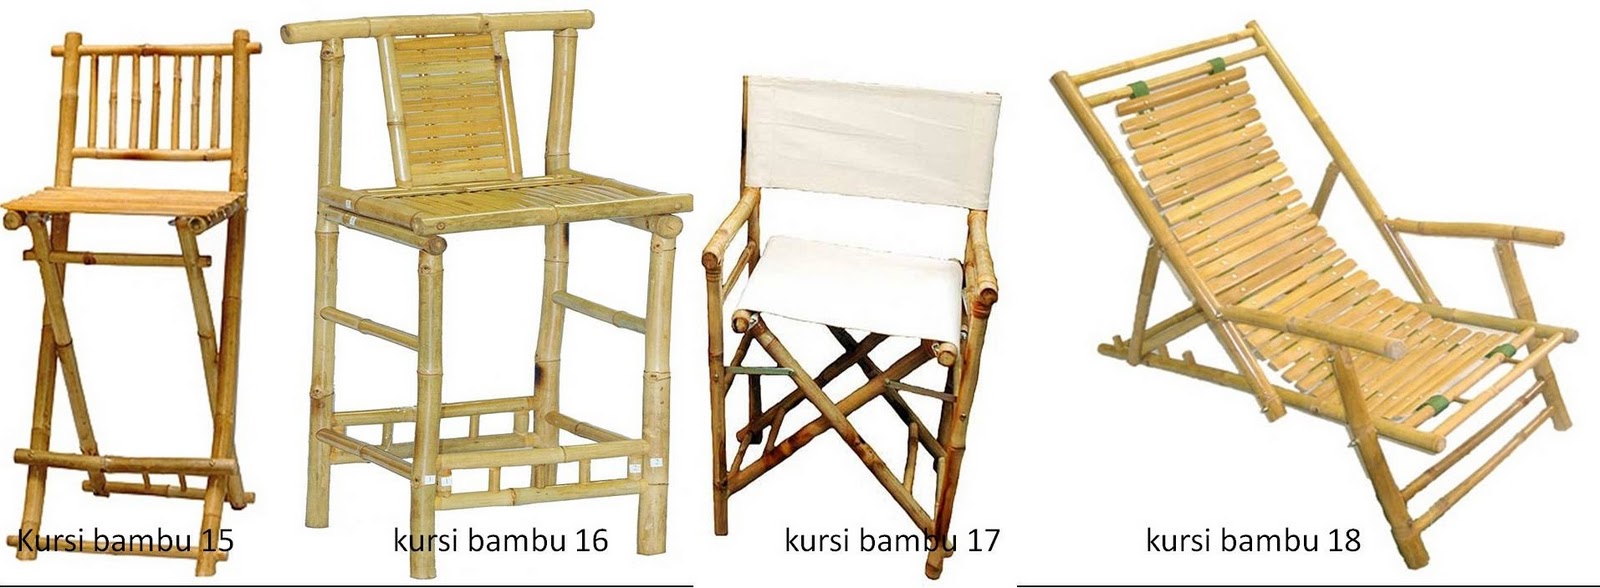 Taman Bambu Nusantara Aneka Model Furnitur dari Bambu